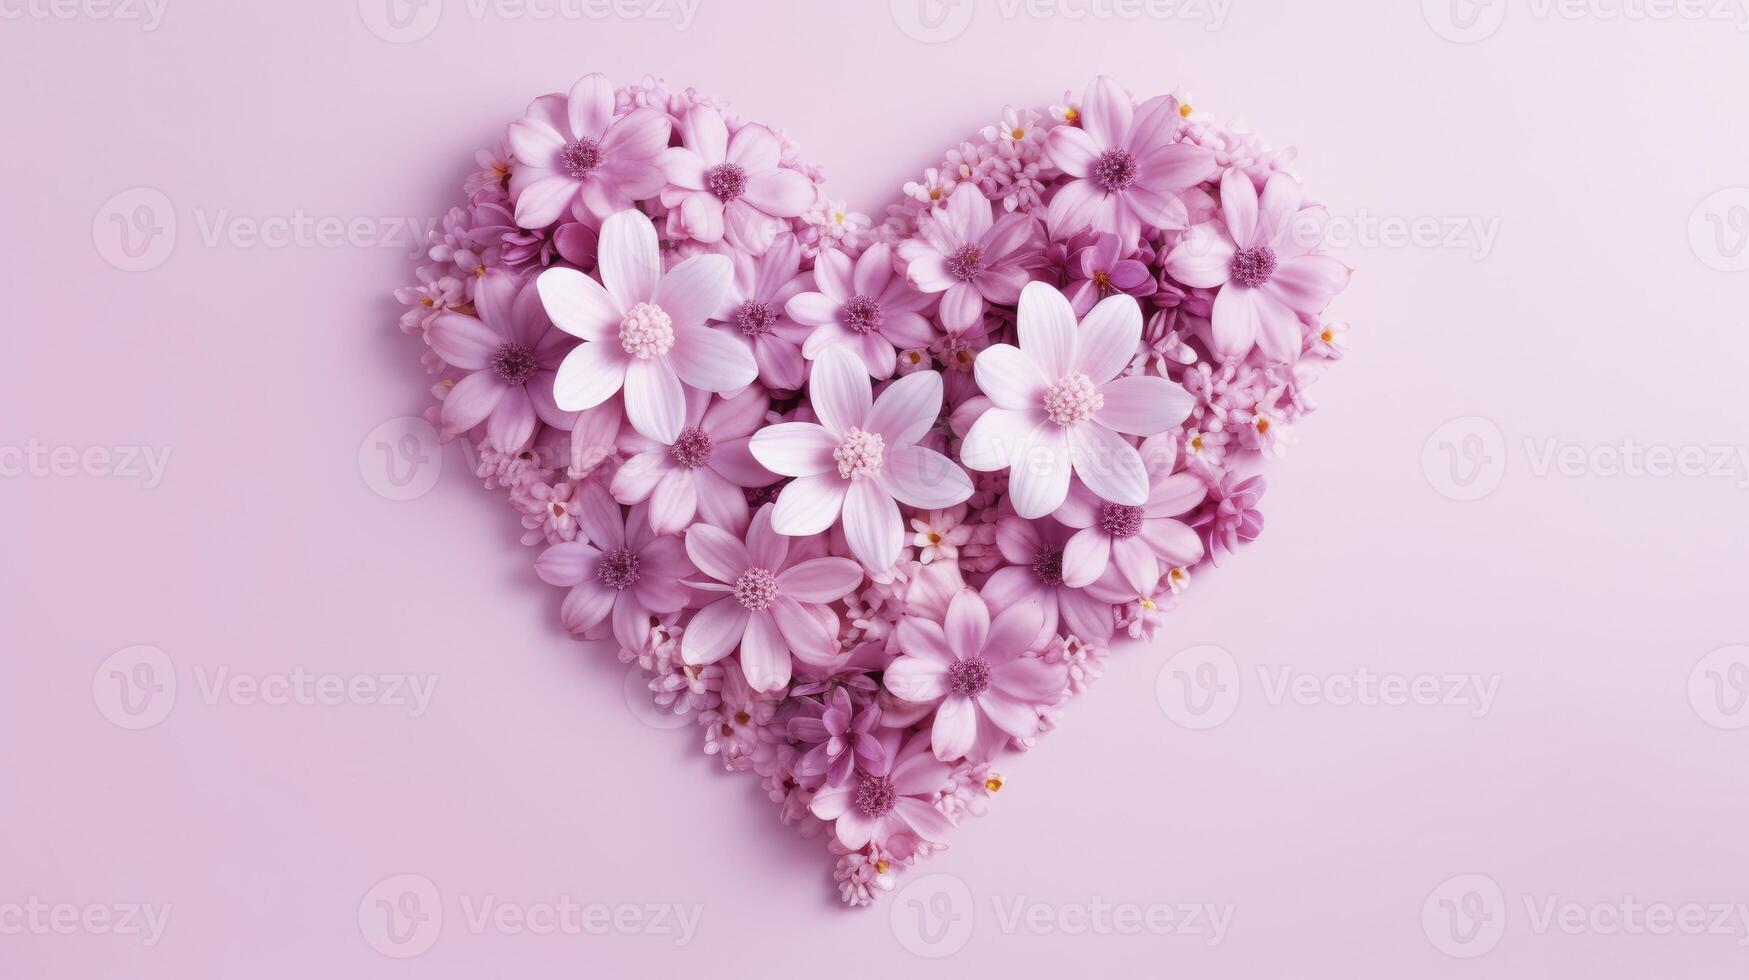 ai generato cuore forma fatto di rosa fiori contro pastello rosa sfondo foto